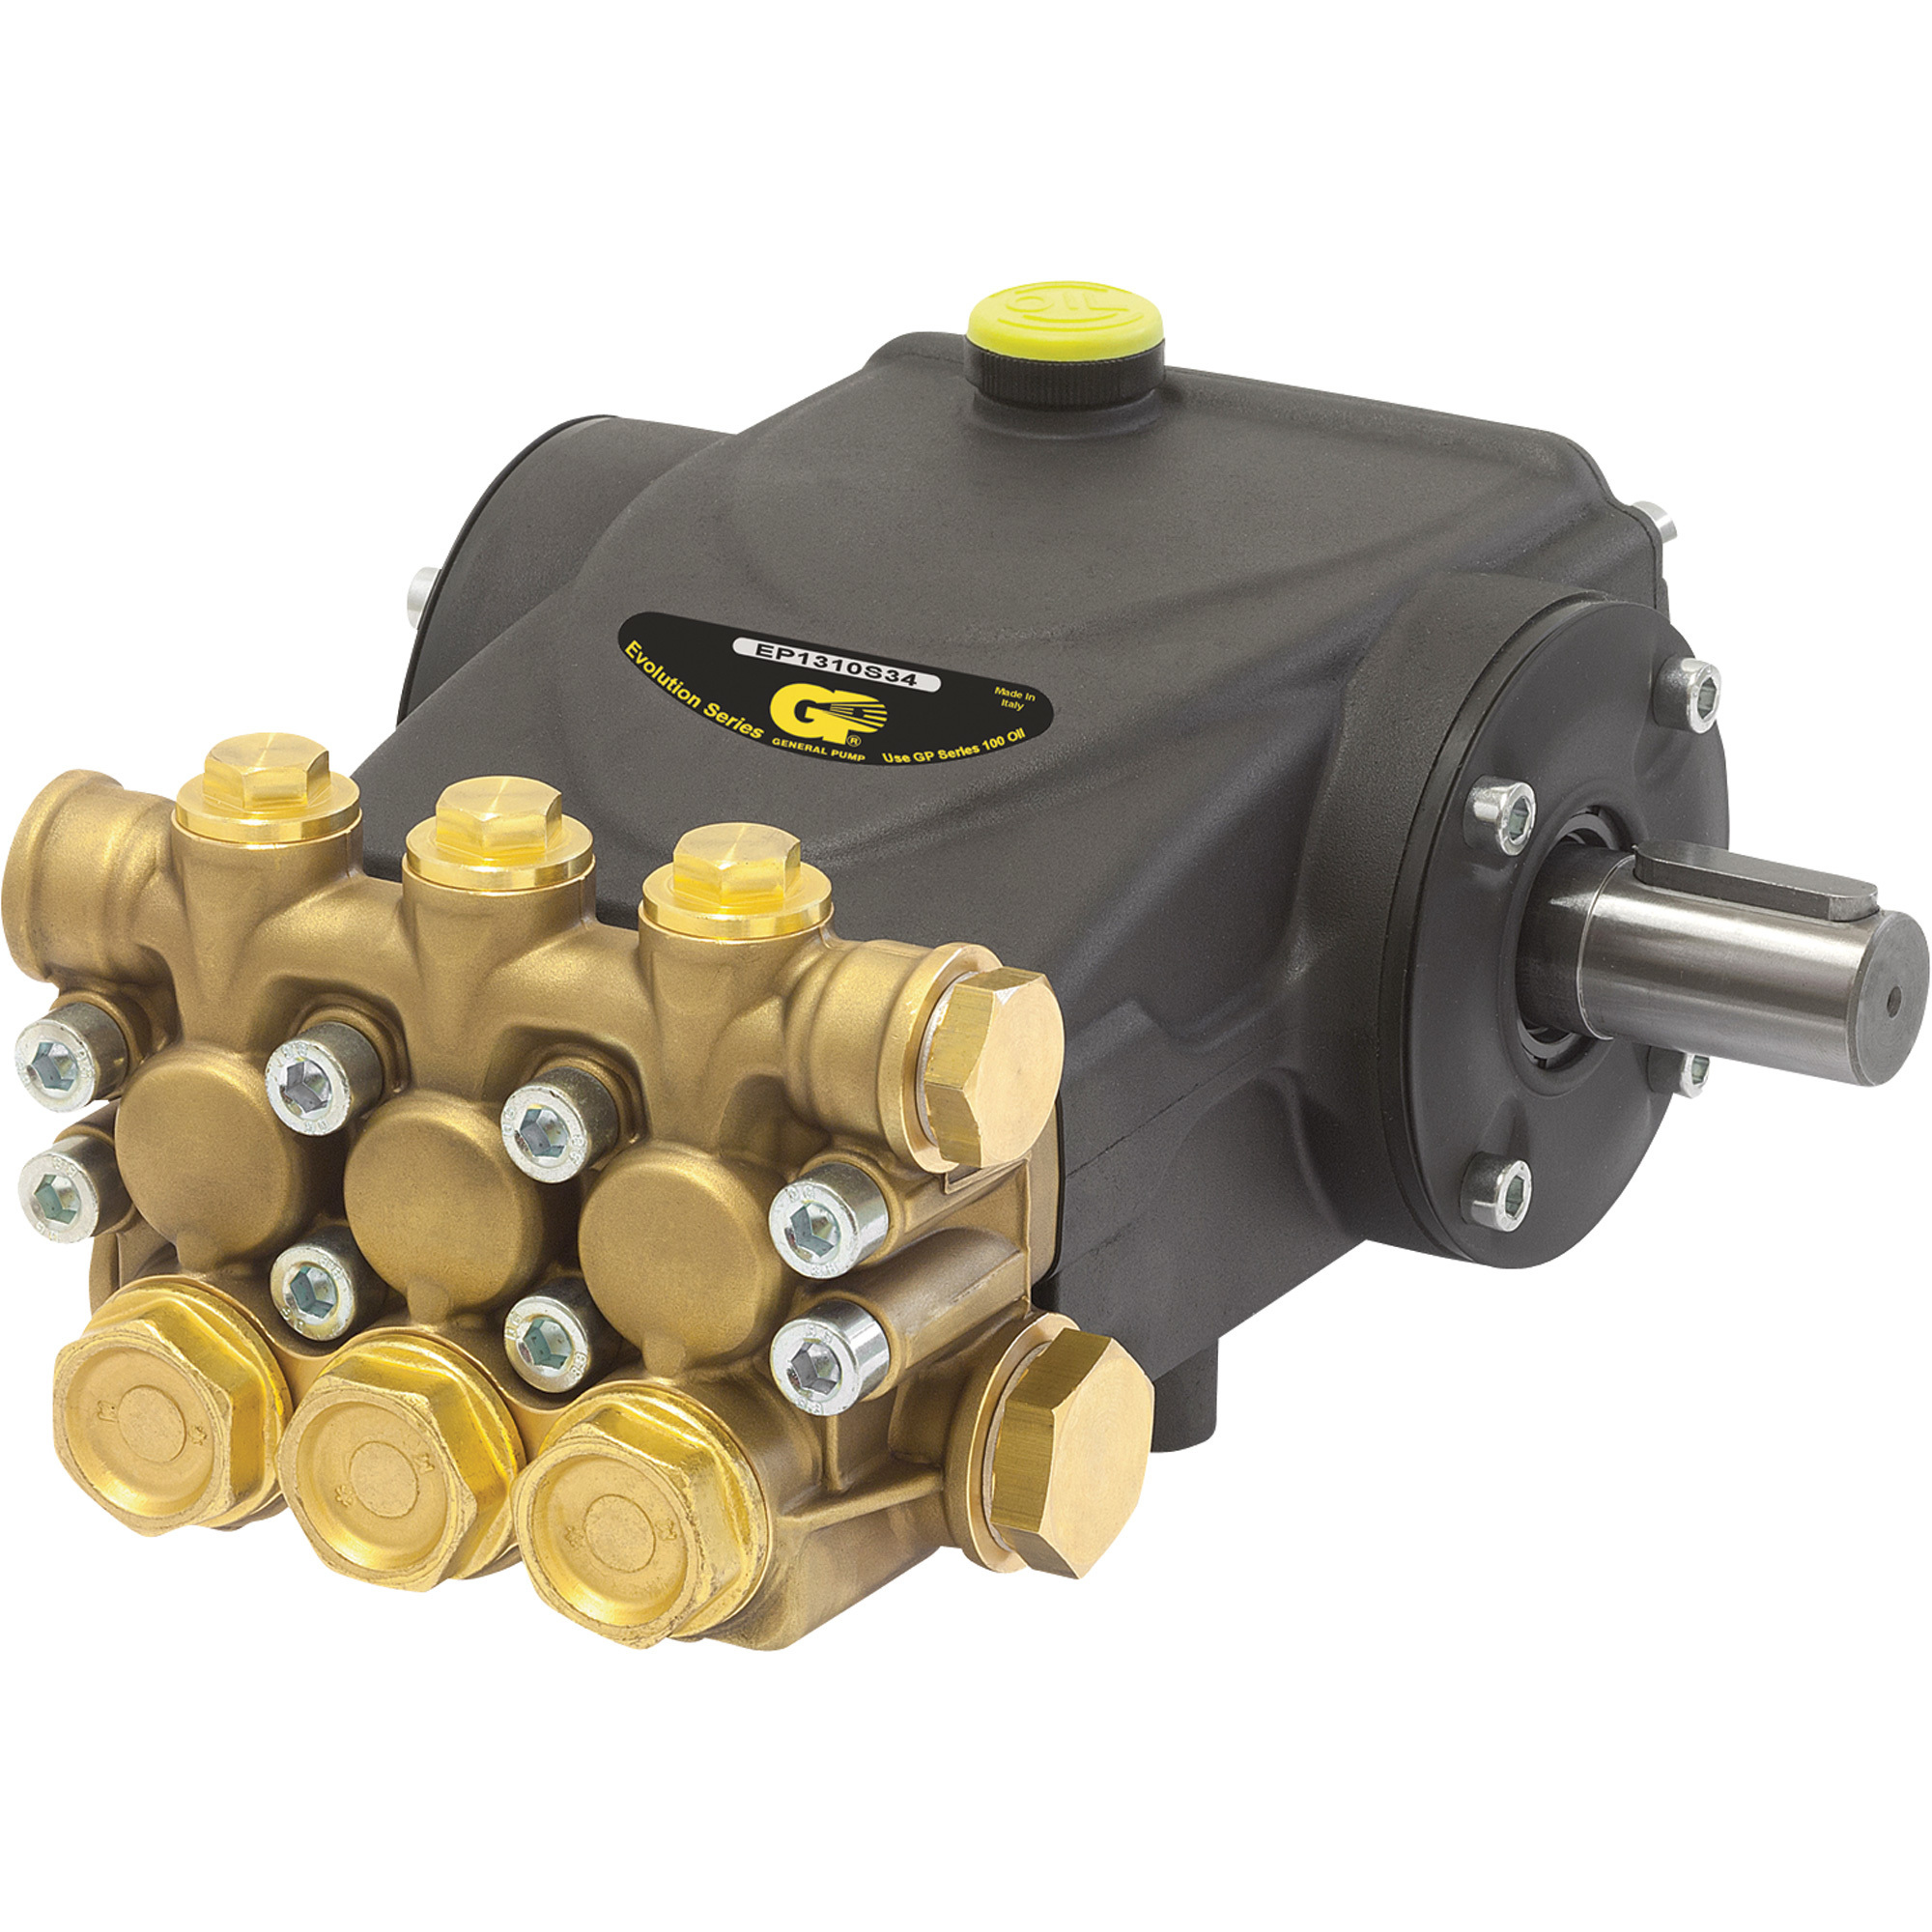 General Pump Triplex Pressure Washer Pump â 4000 PSI, 4.0 GPM, Belt Drive, Model EP1313S34